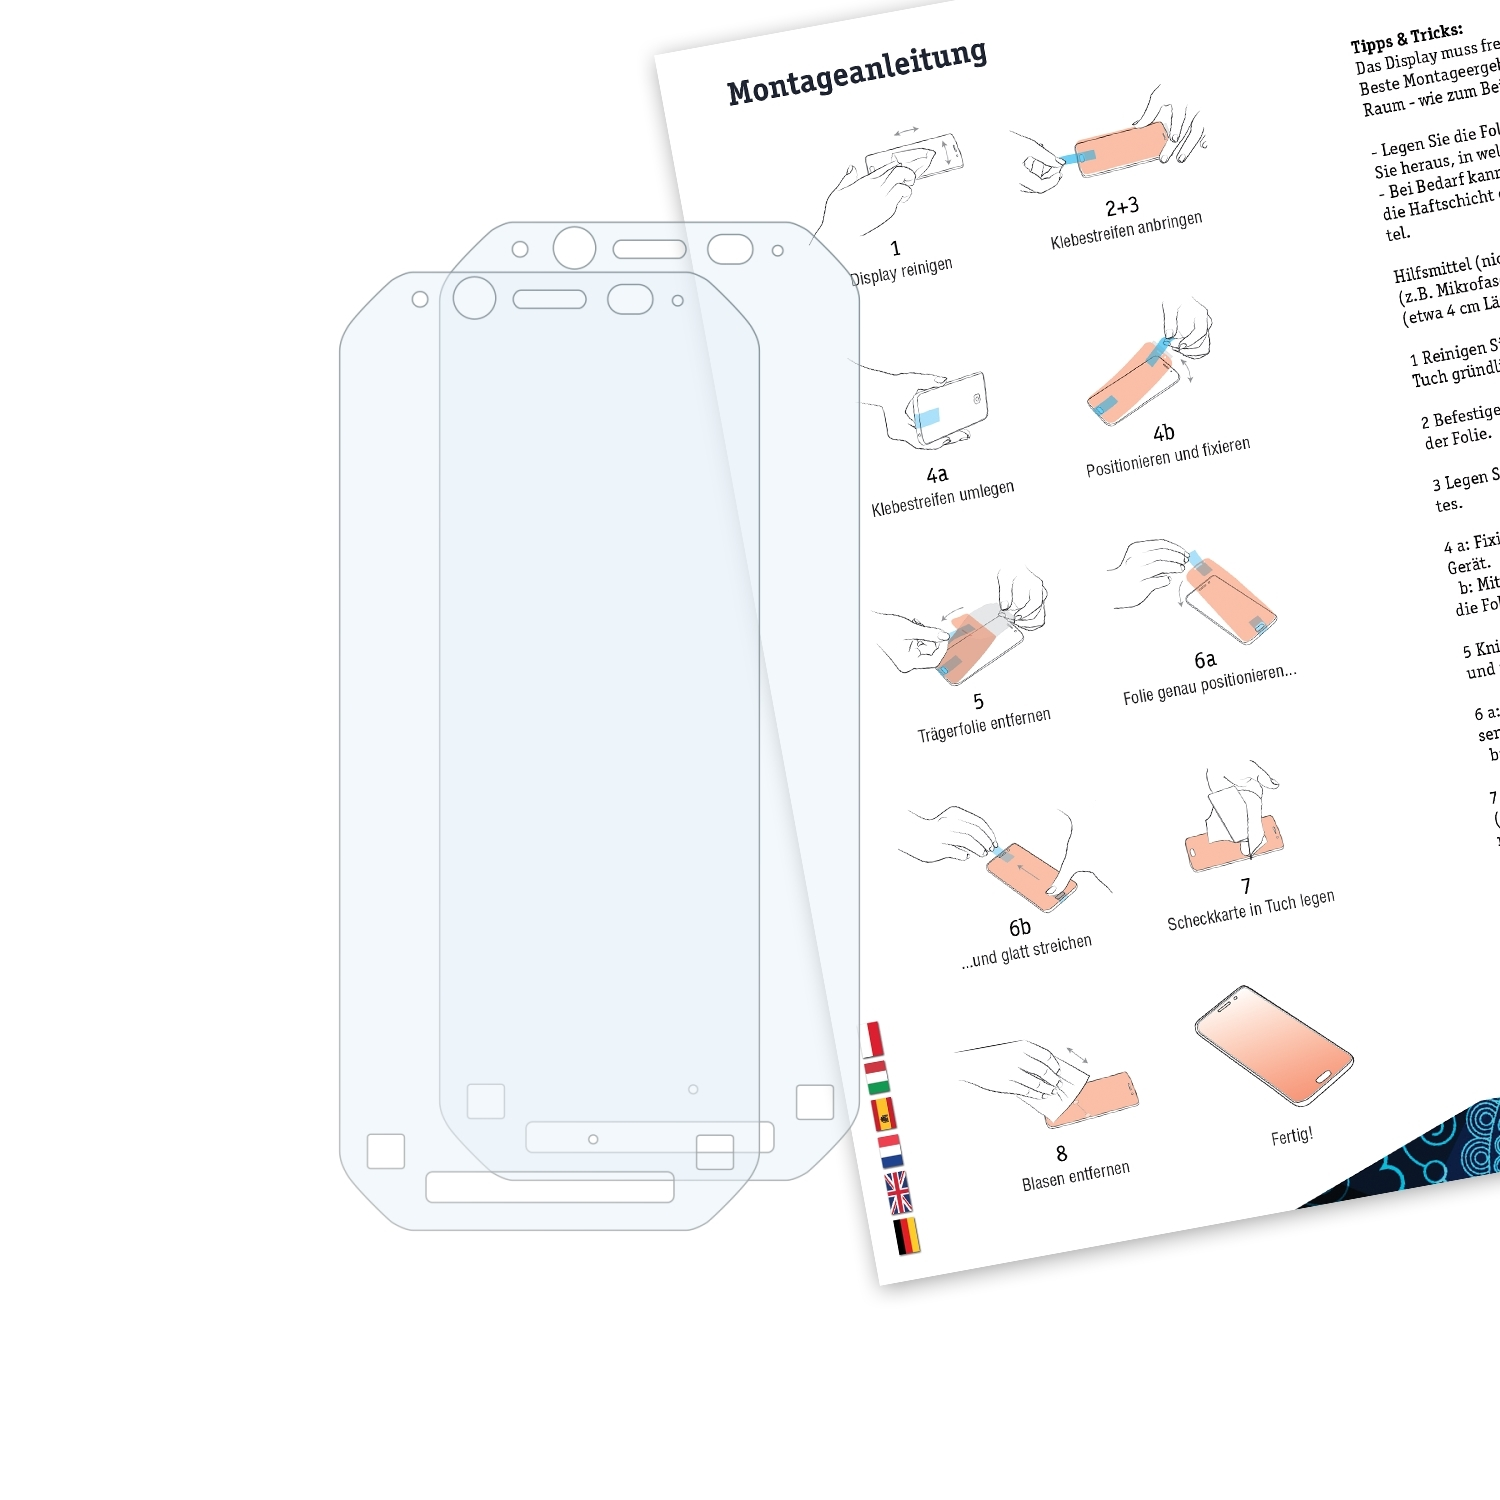 BRUNI 2x Basics-Clear Schutzfolie(für Toughbook Panasonic FZ-N1)